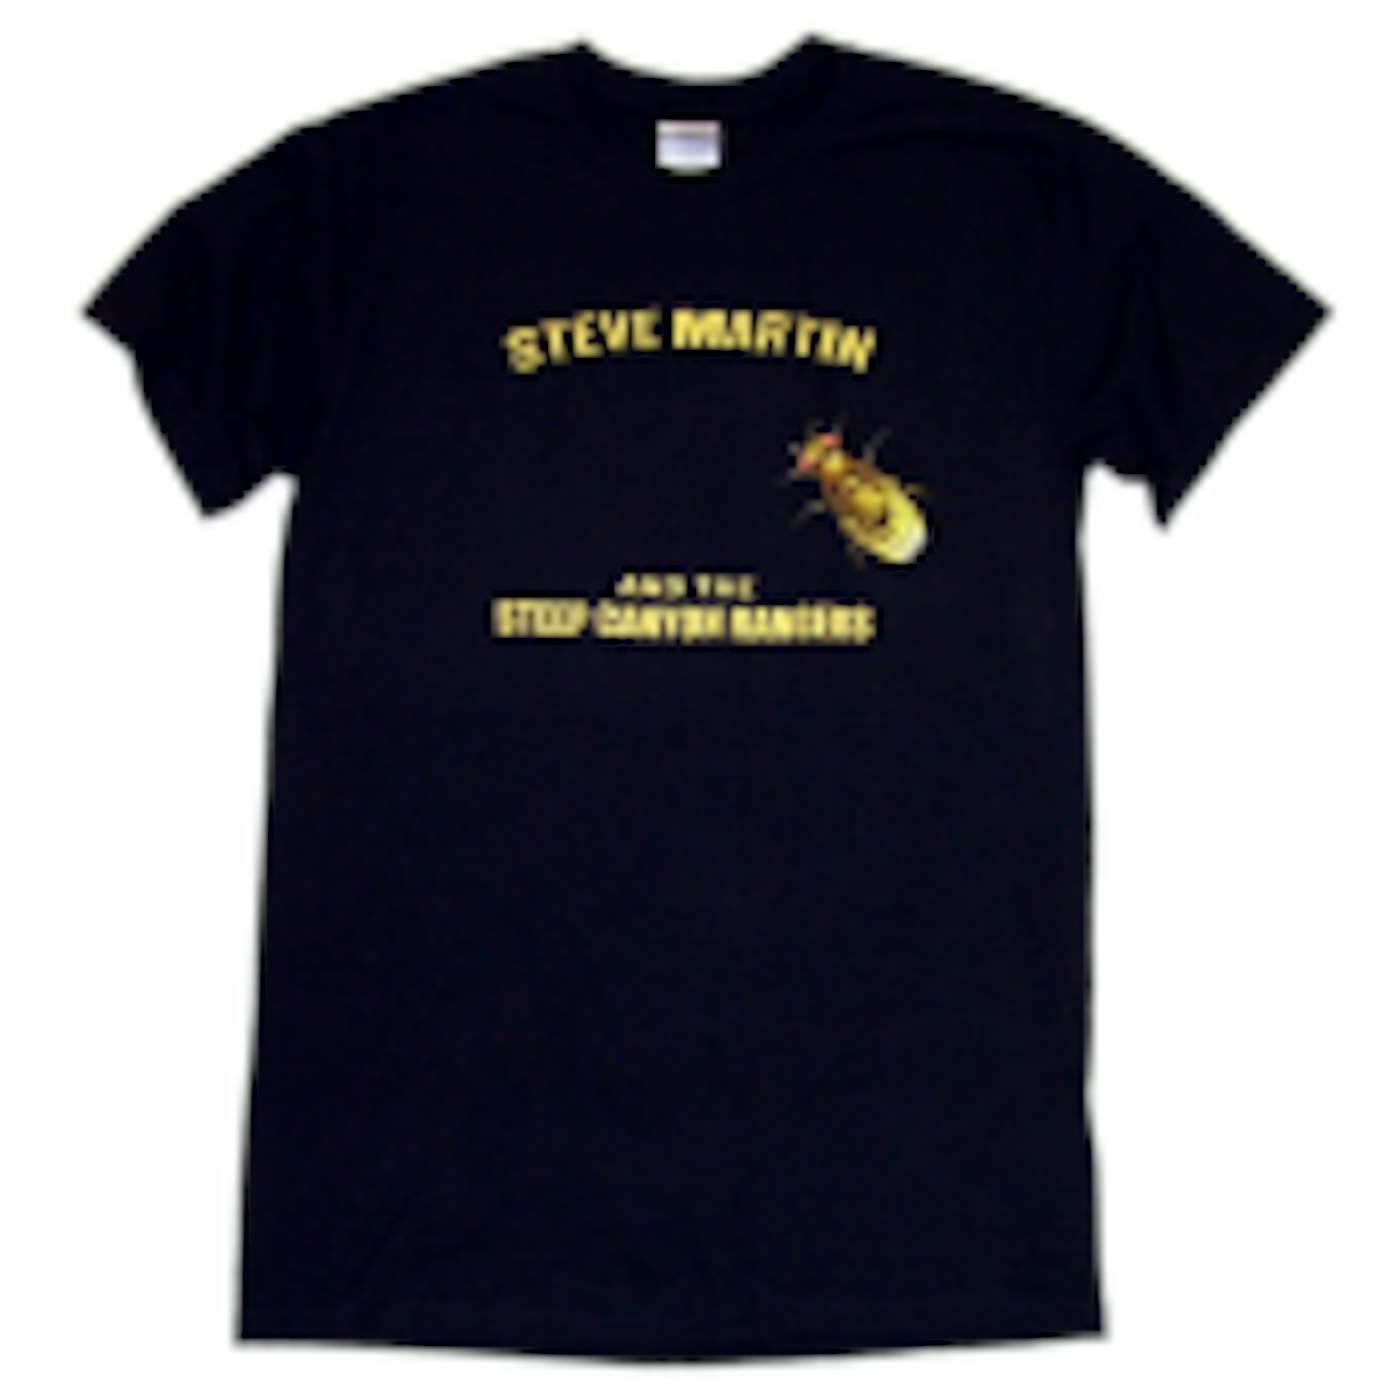 Steve Martin Black Fly Tee